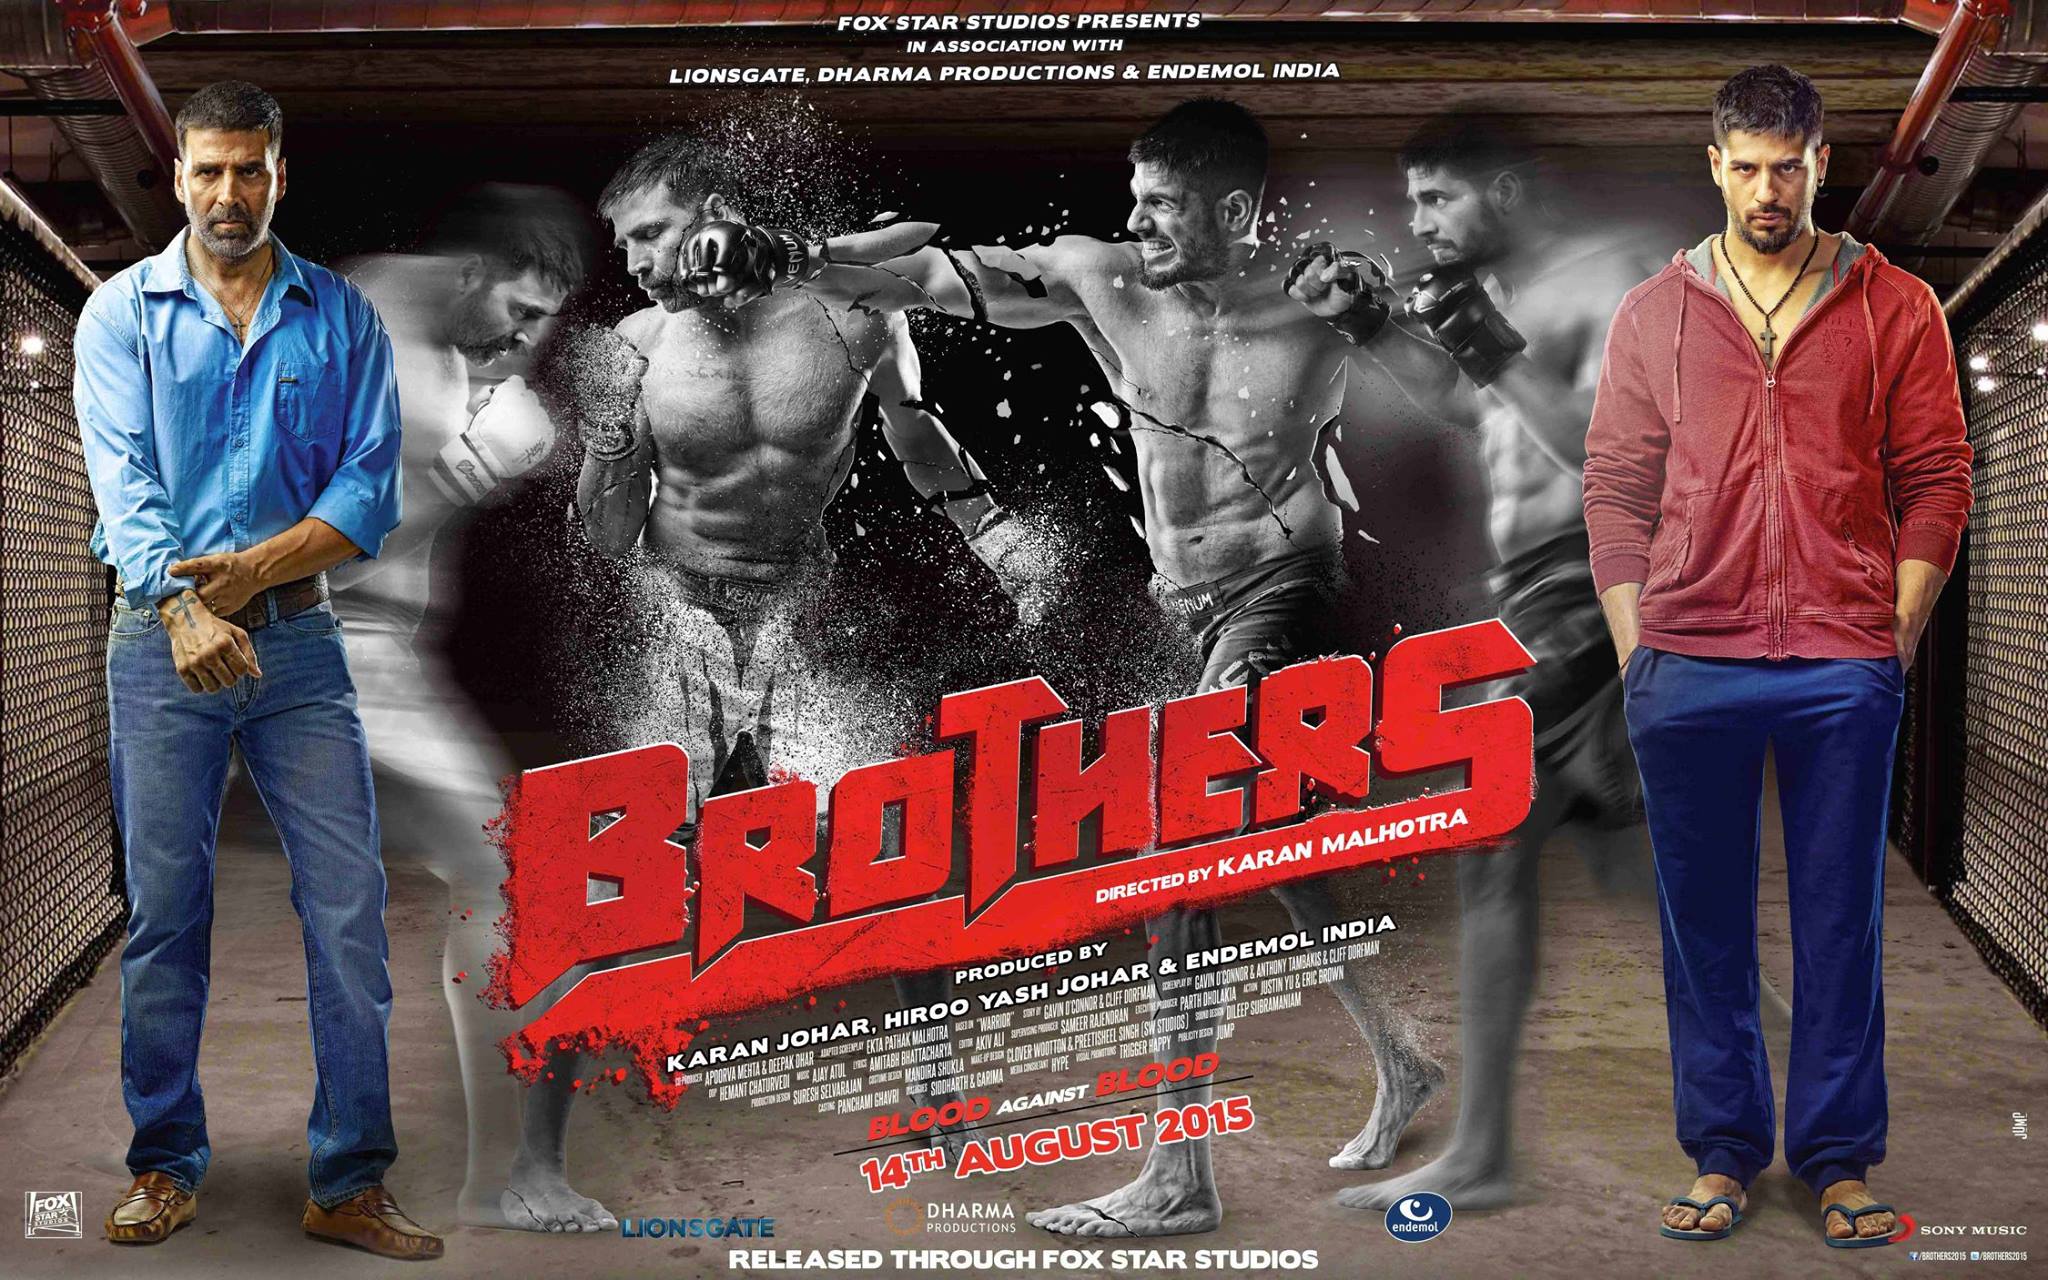 Brothers Movie Review. BollySpice.com